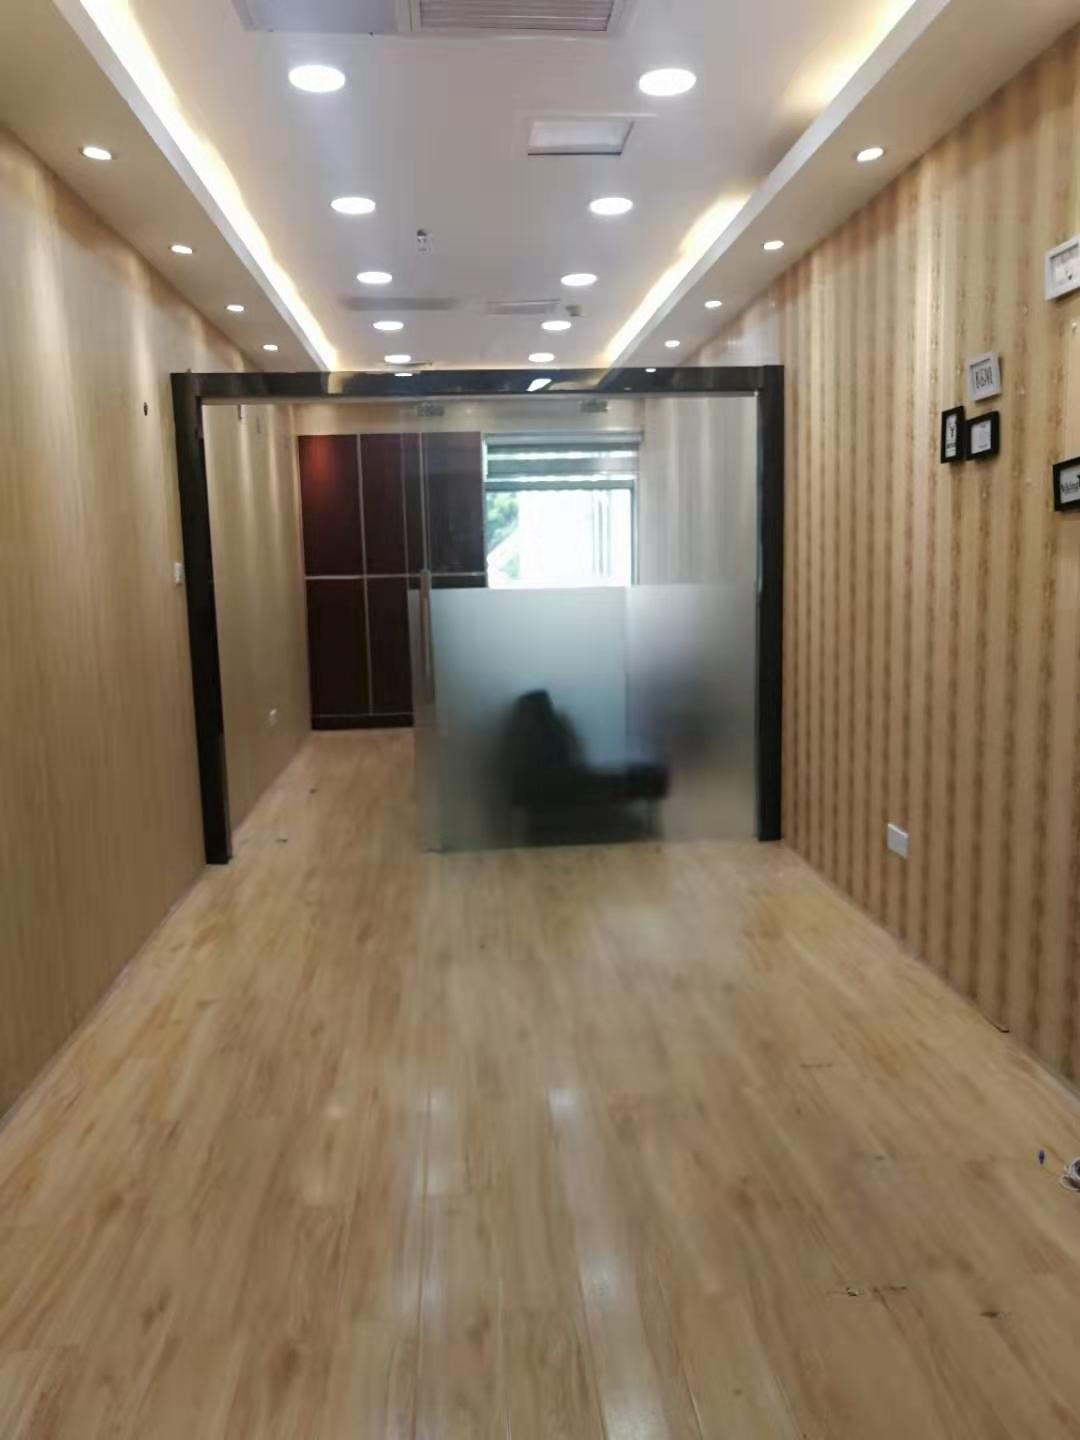 越秀区广州火车站附近精装小面积办公室30～100平